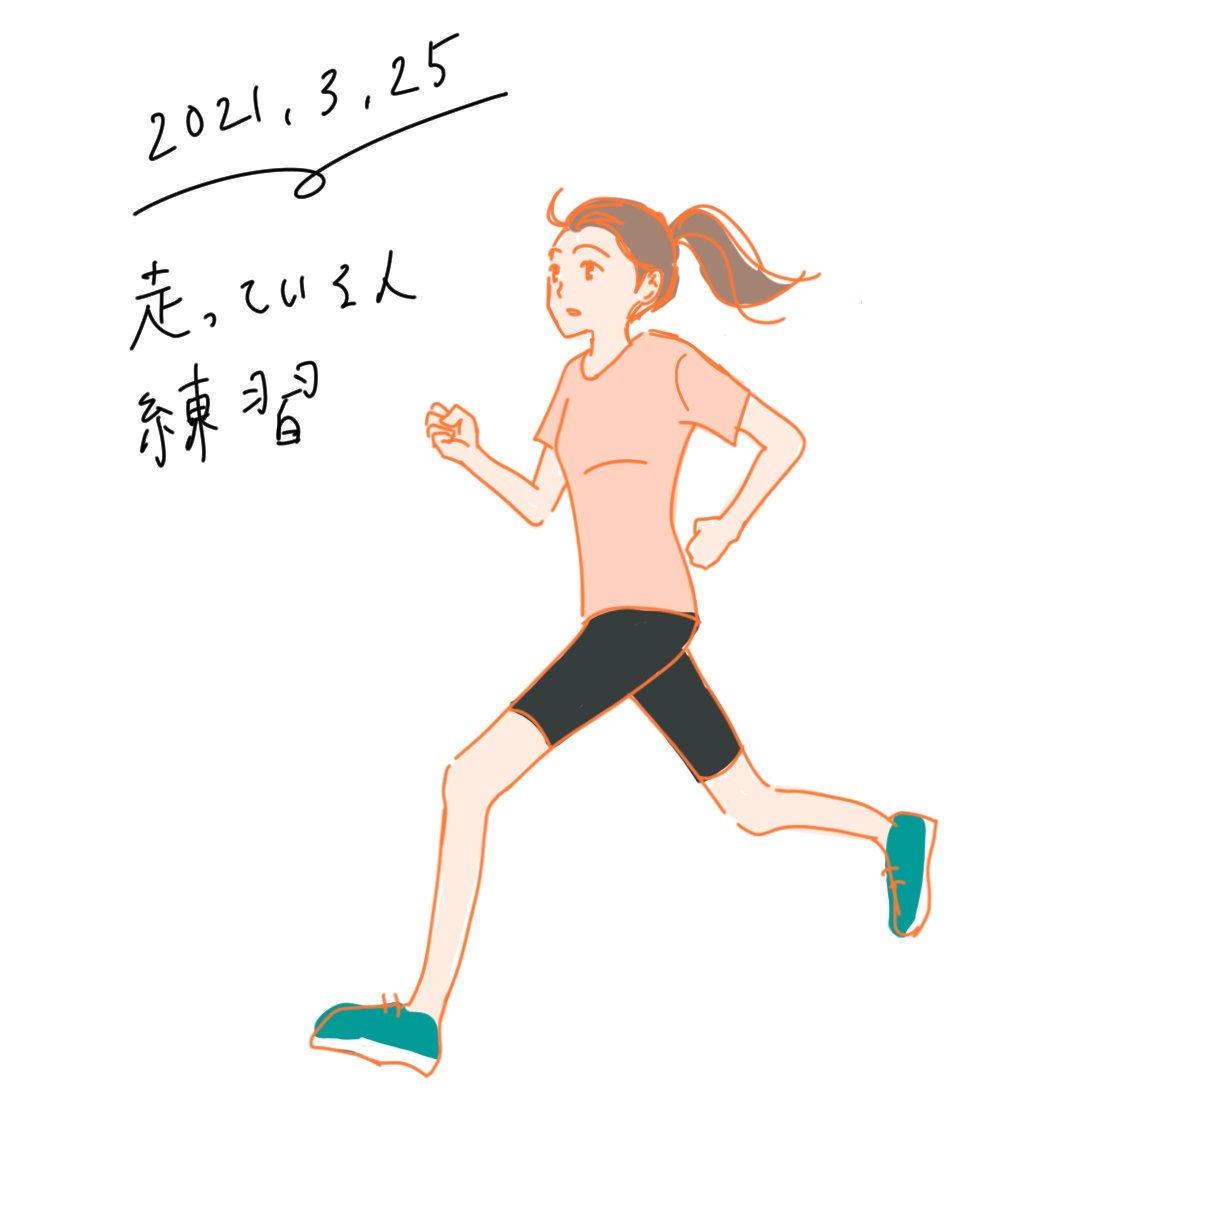 Twitter 上的 Hiyotamari 今日は苦手分野の克服 正面の顔 と 走っている人 の練習 どちらも特に左右バランスを取るのが大事 イラスト イラスト練習中 絵描きさんと繫がりたい イラスト好きな人と繋がりたい T Co Czukmu3lor Twitter